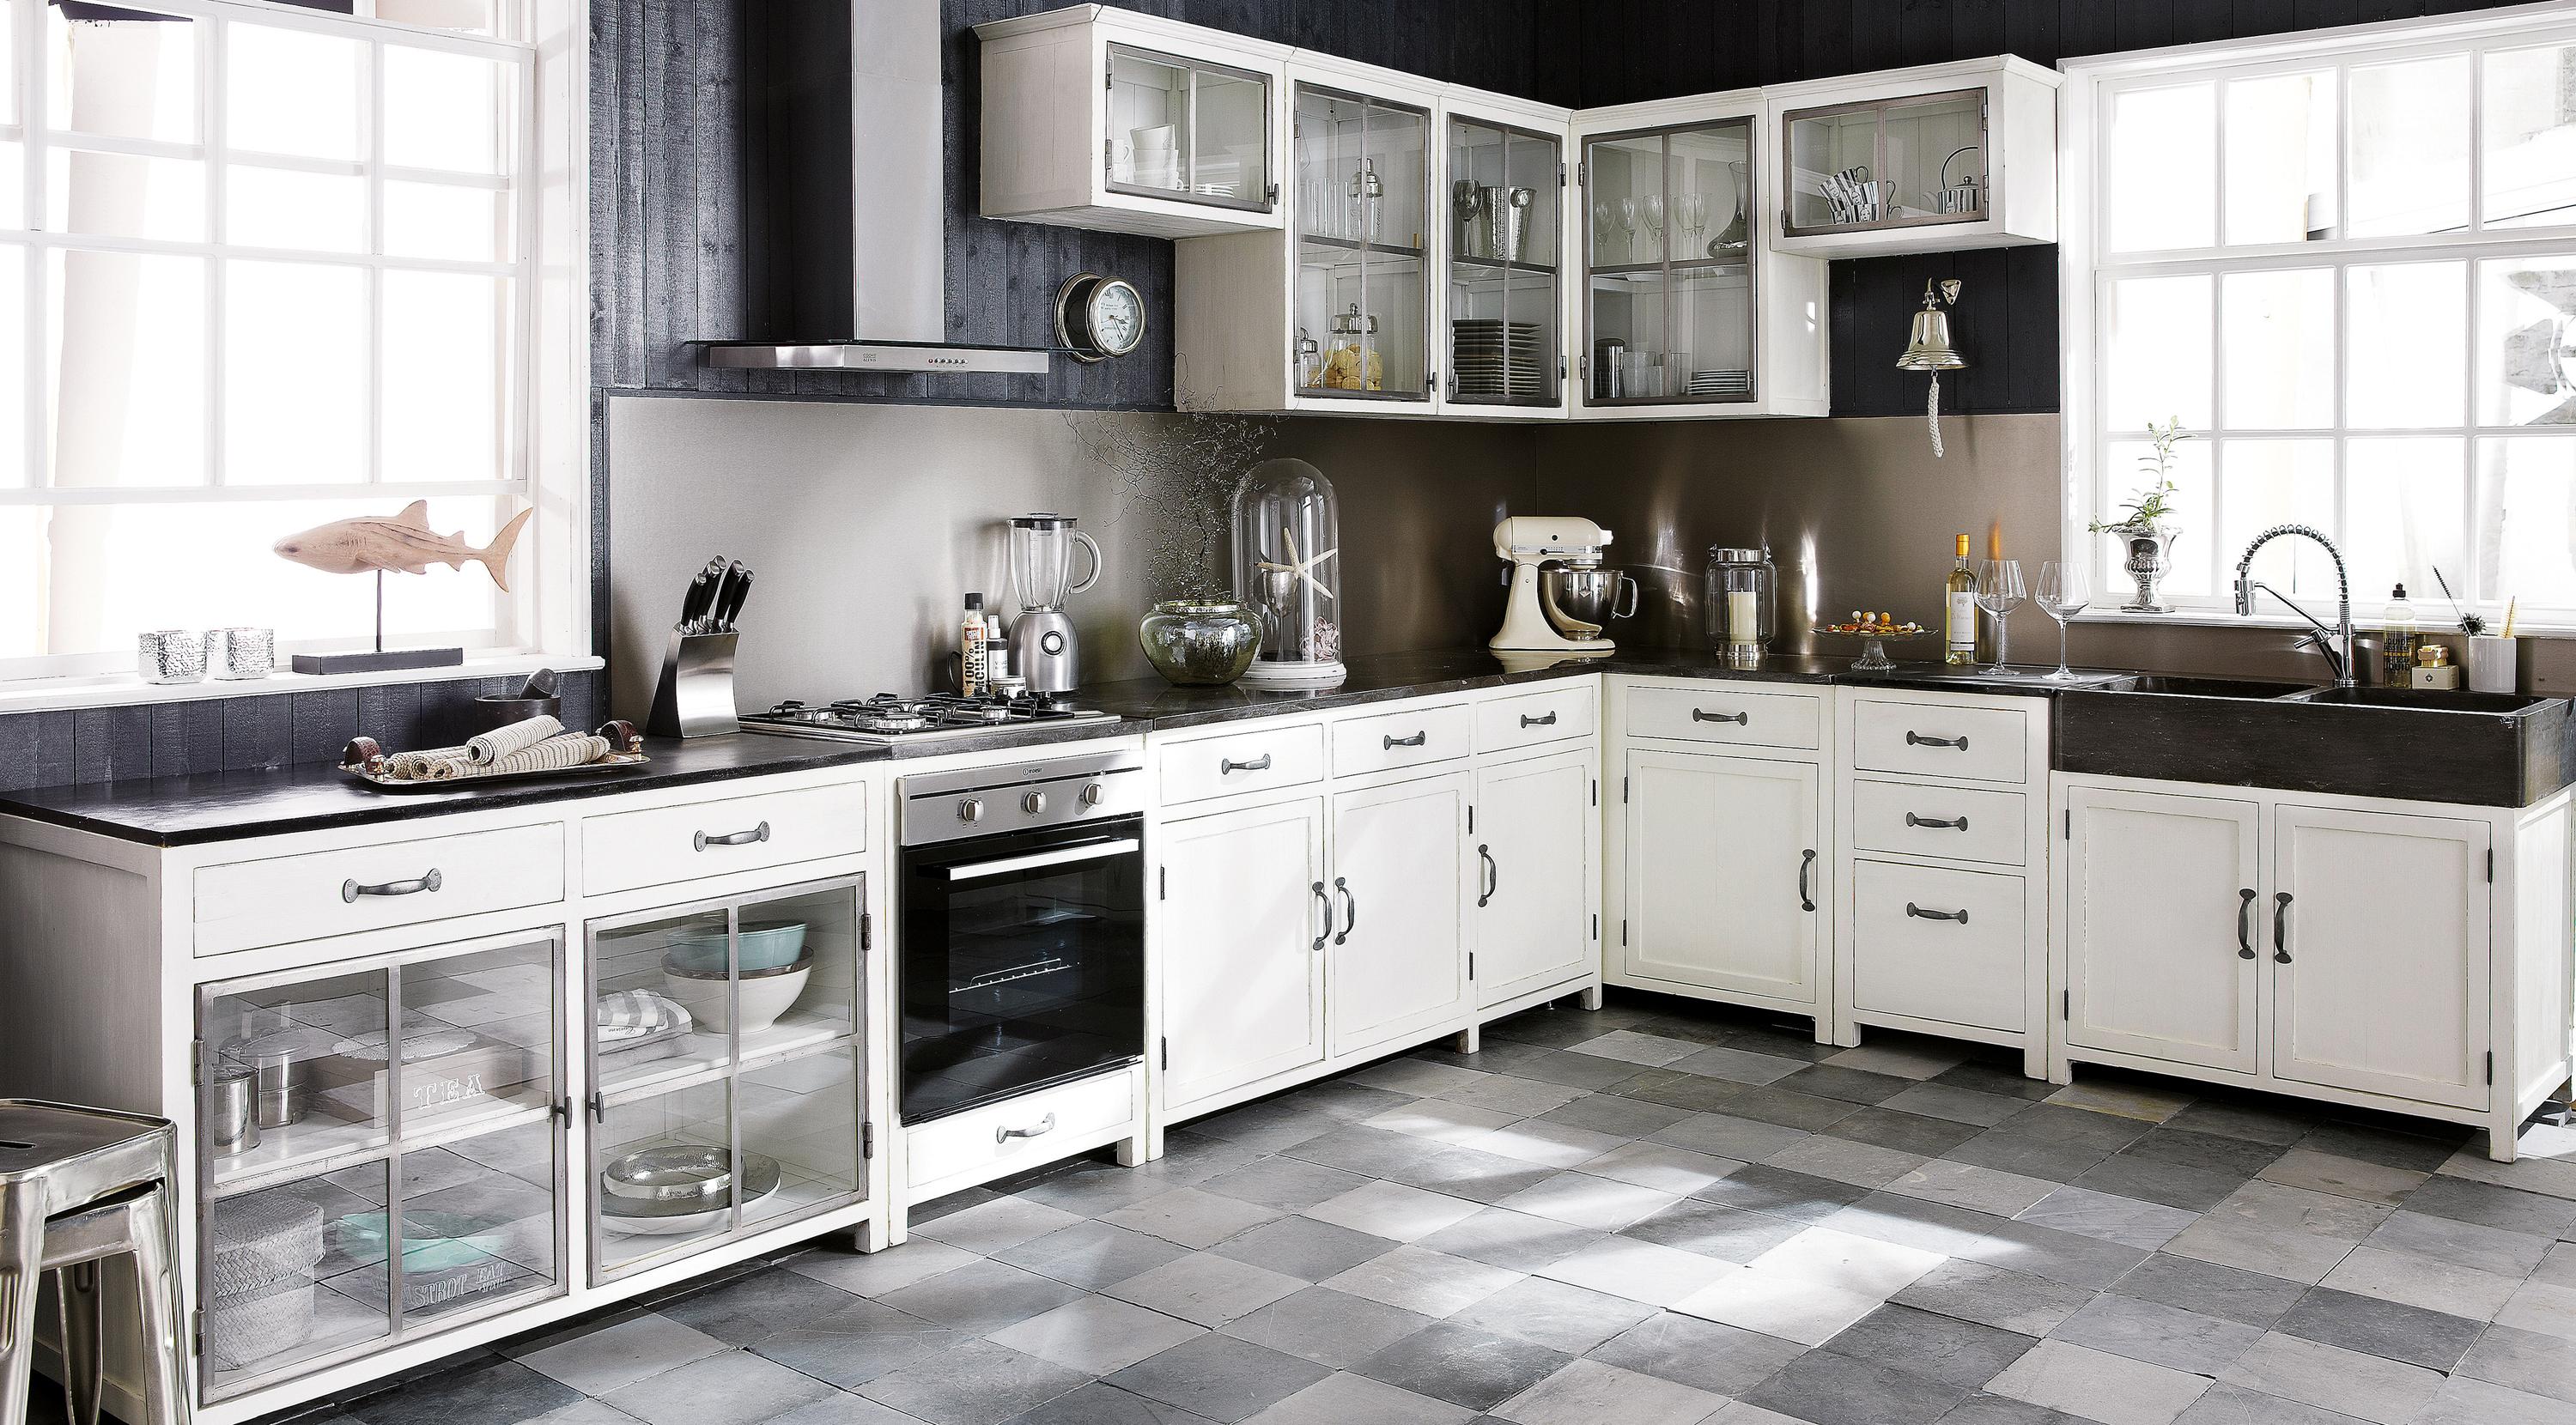 Küchenzeile in Schwarz-Weiß #fliesen #schwarzweißeküche #grauefliesen #fensterrahmen ©Maisons du Mondes